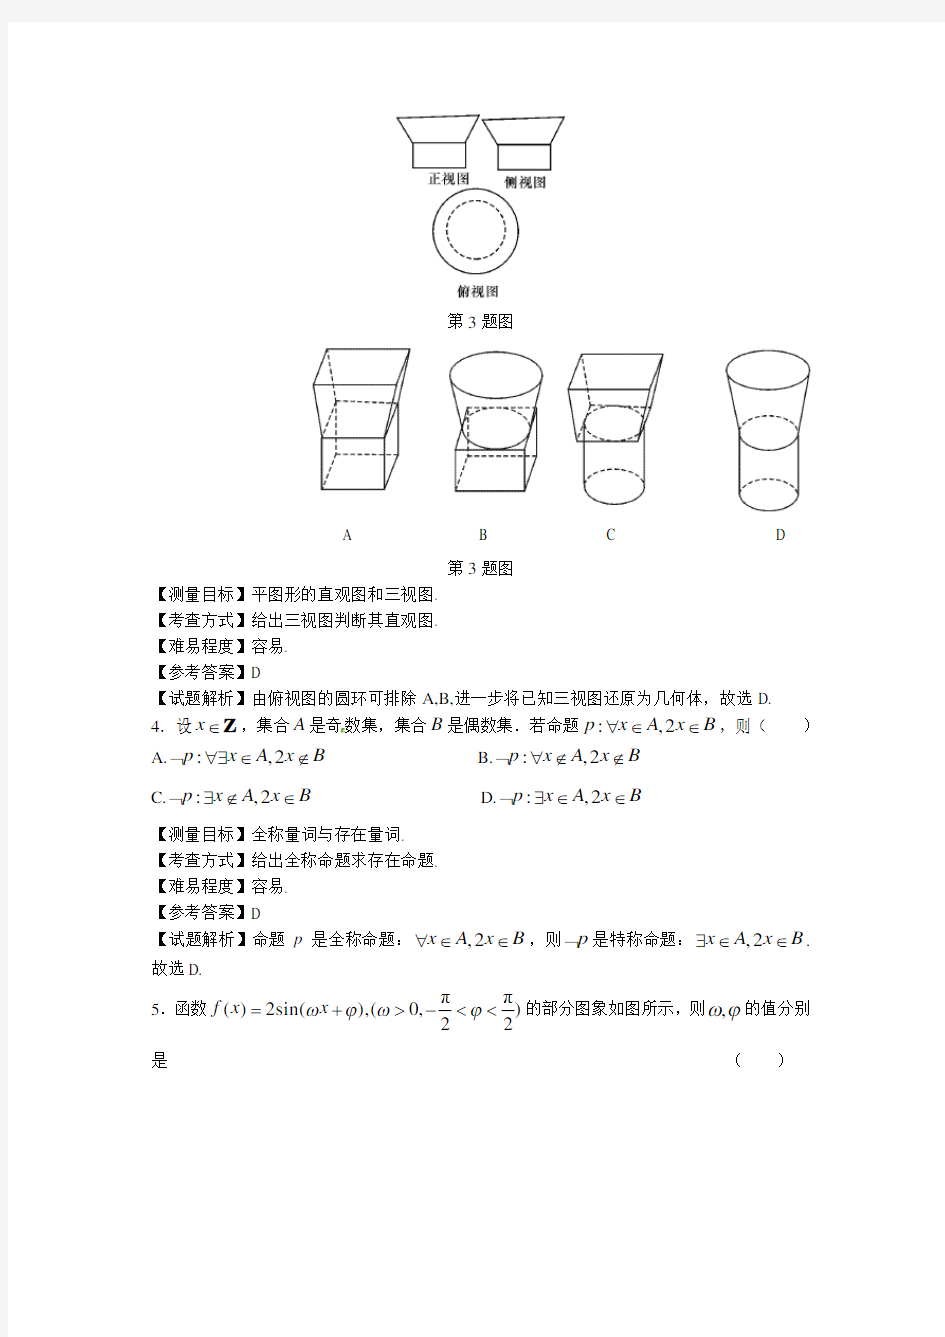 2013年四川高考数学理科试卷(带详解)